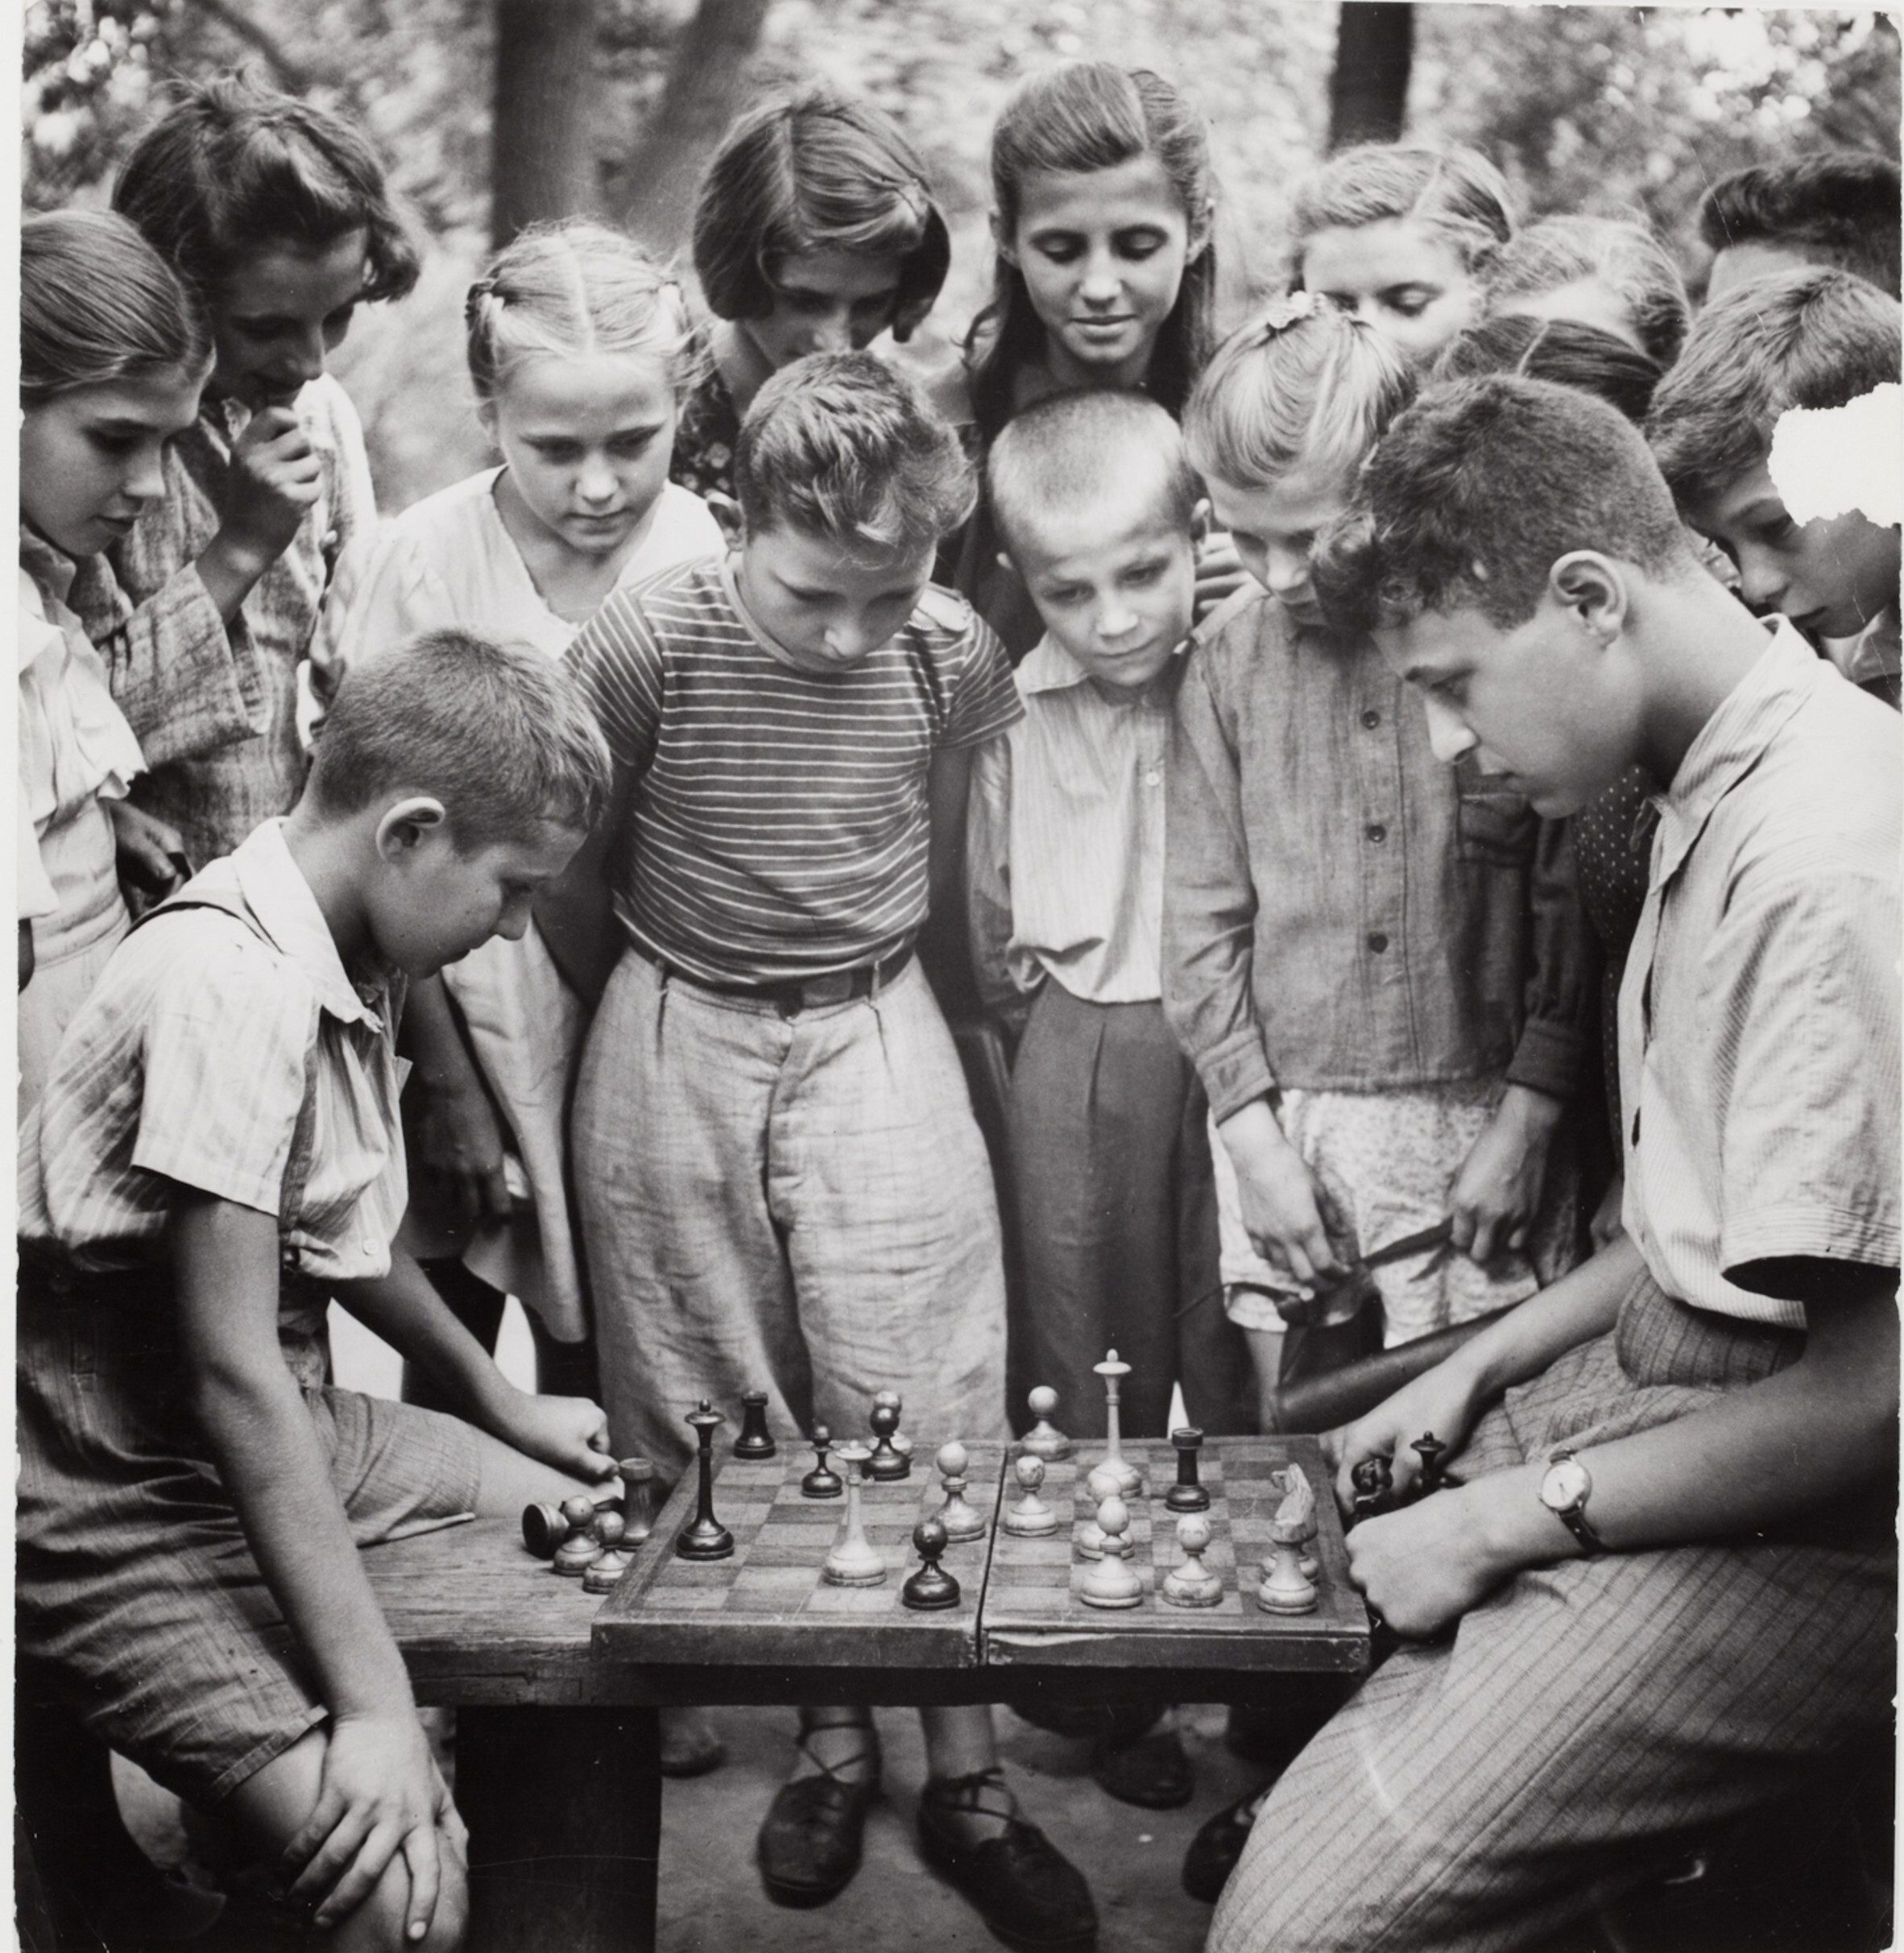 Два мальчика играют в шахматы на скамейке в парке перед толпой зрителей, Москва, 1947 год. Фотограф Роберт Капа